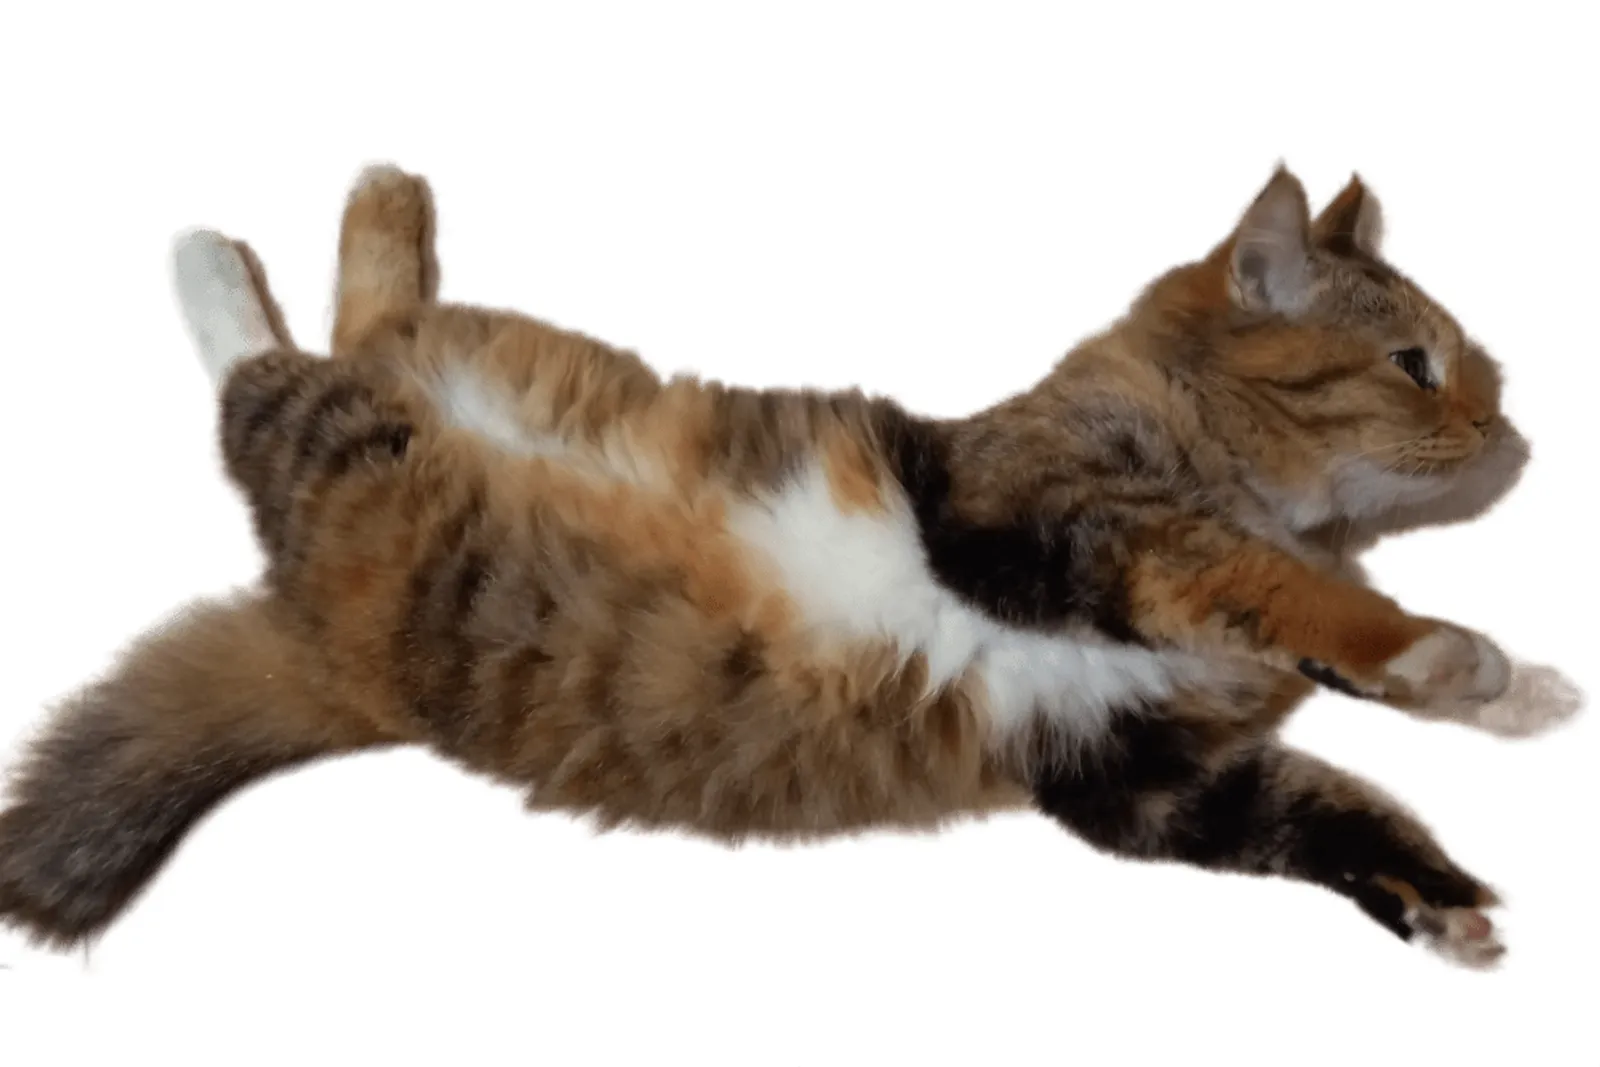 Mengenal Kucing Mixdom, Ciri-Ciri, Jenis, dan Cara Merawatnya